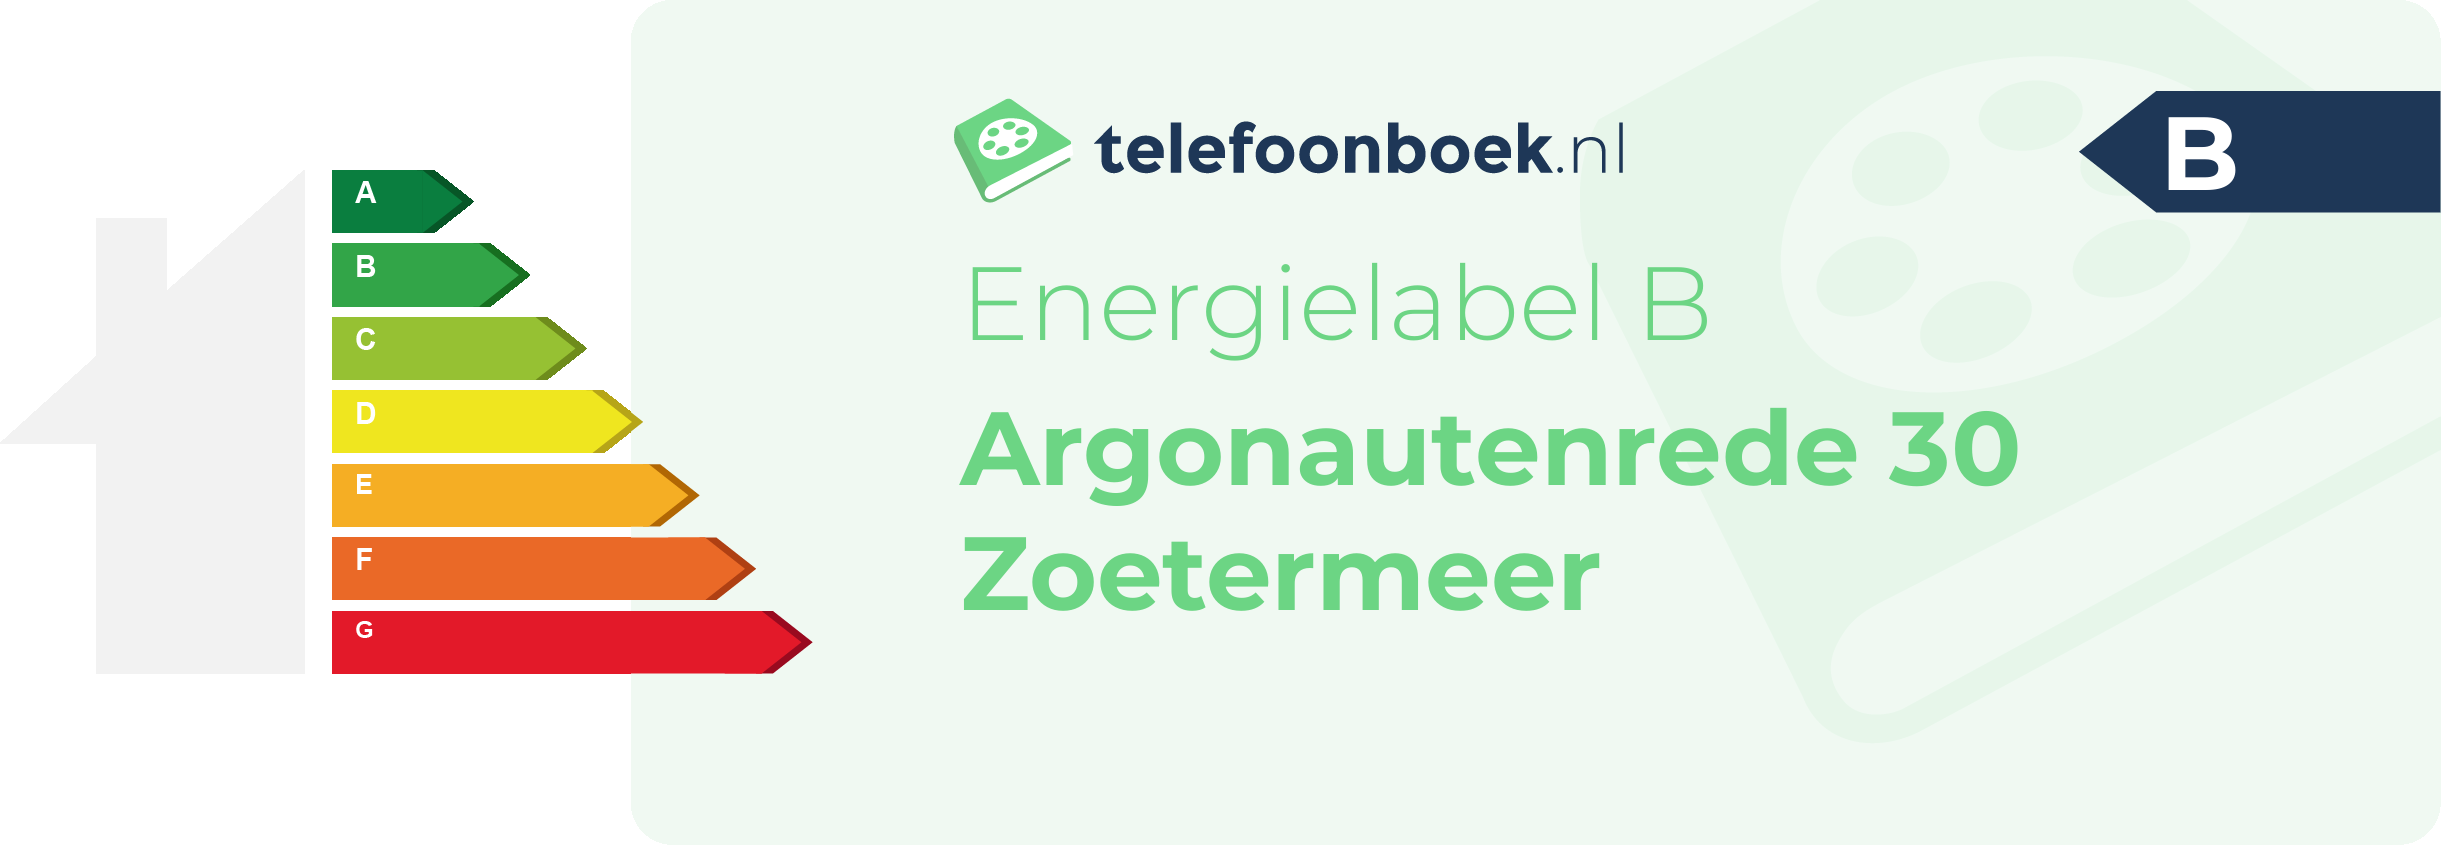 Energielabel Argonautenrede 30 Zoetermeer